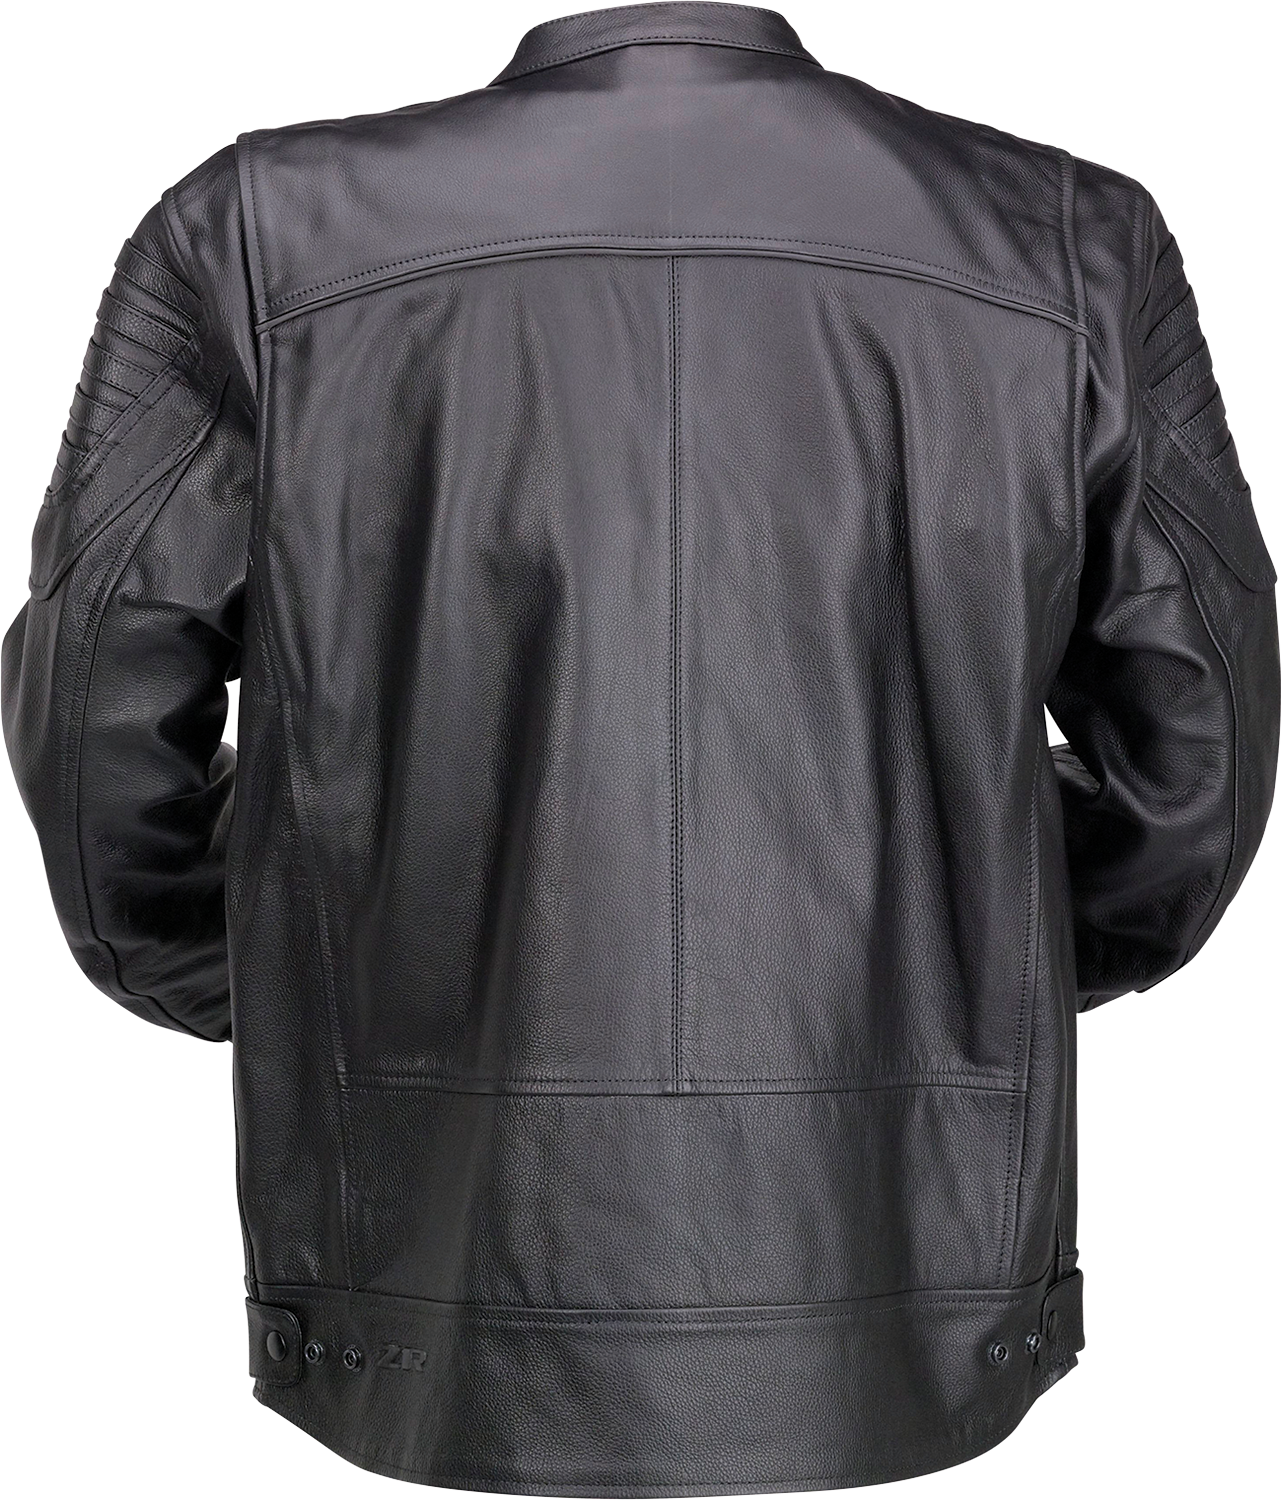 Z1R Widower Leather Jacket - Black - 3XL 2810-3974